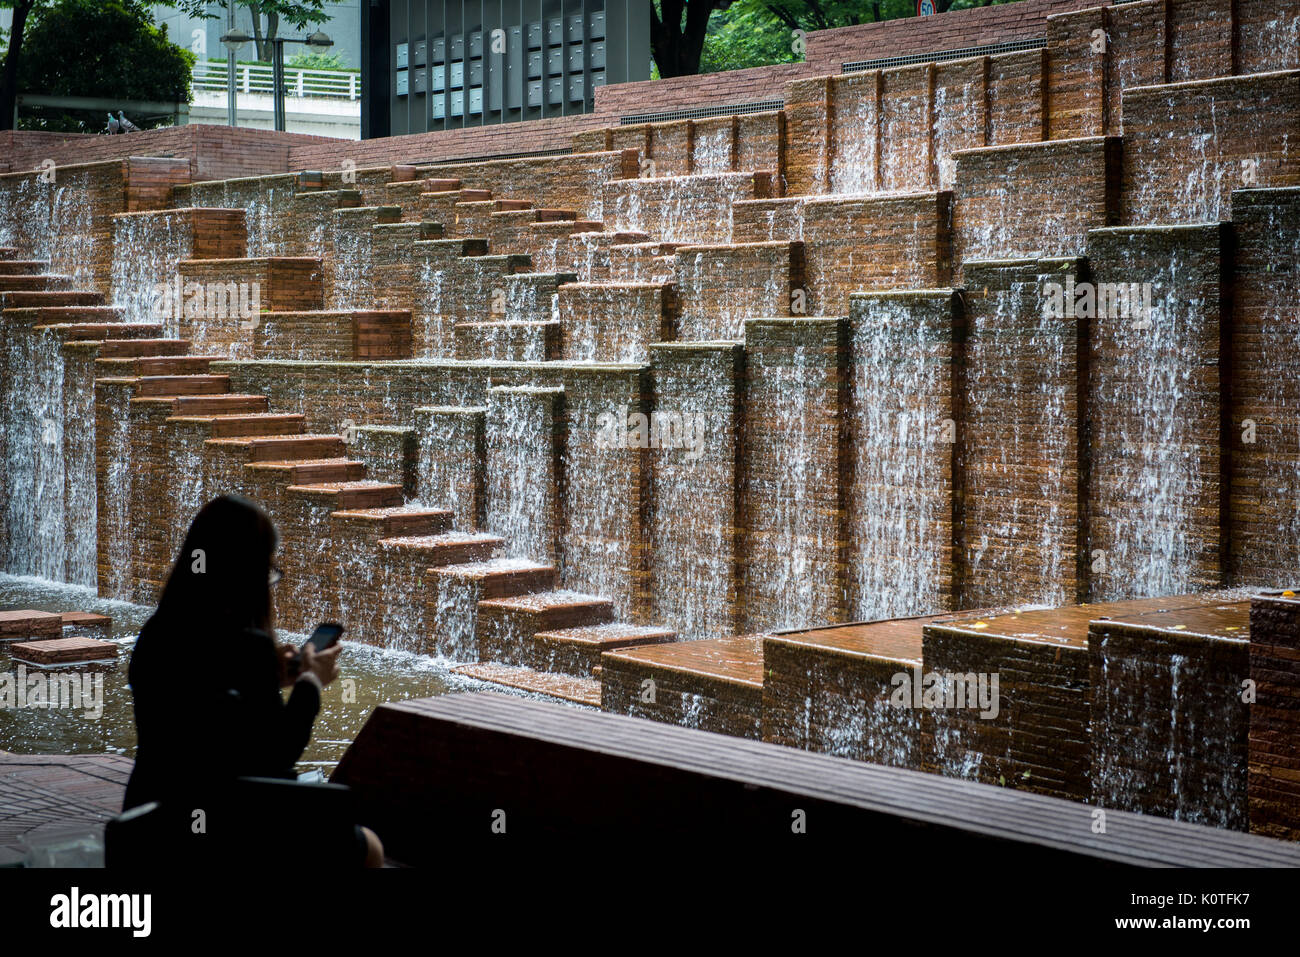 Escalier fontaine d'eau dans un bâtiment de bureau avec femme silhouetée utilisant un appareil mobile Banque D'Images